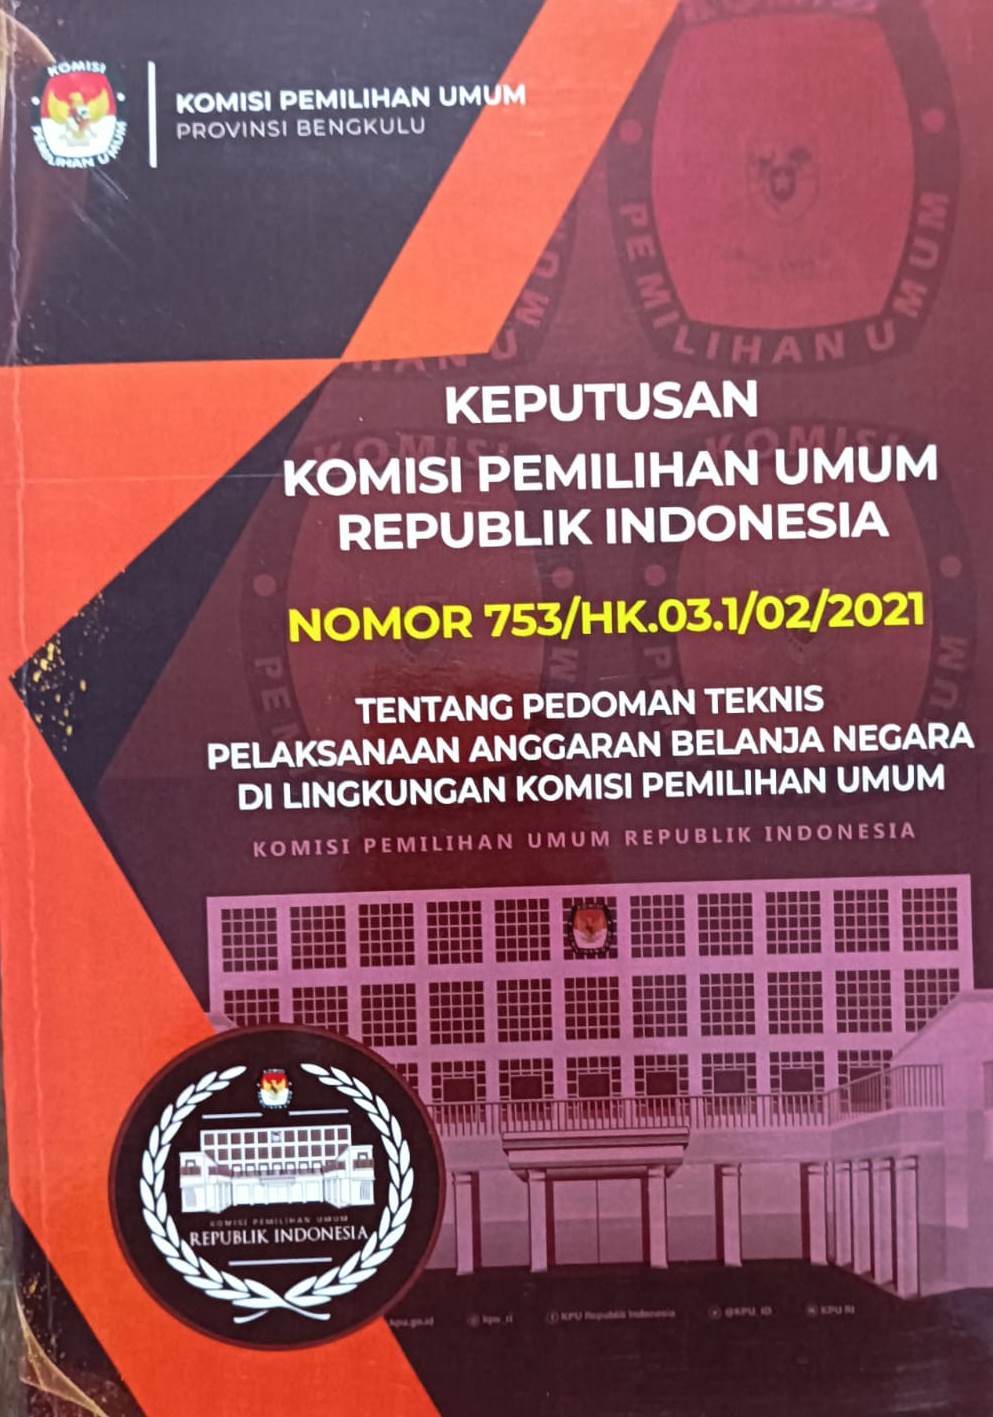 Keputusan Komisi Pemilihan Umum Republik Indonesia Nomor 753/HK.03.1/02/2021 Tentang Pedoman Teknis Pelaksanaan Anggarn Belanja Negara Di Lingkungan Komisi Pemilihan Umum